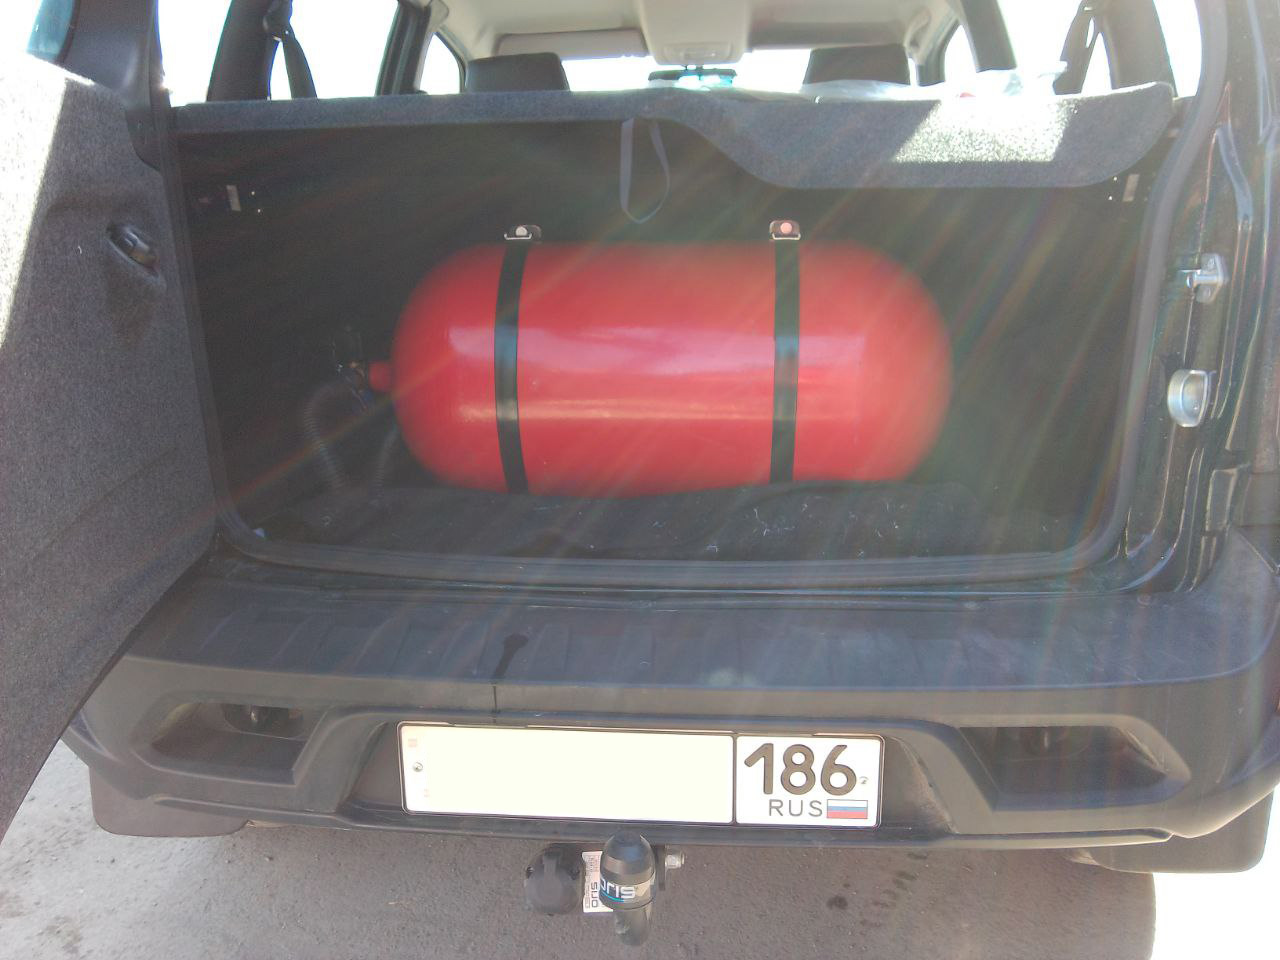 Метановый баллон (тип 1) 90 литров в багажнике Нивы Тревел